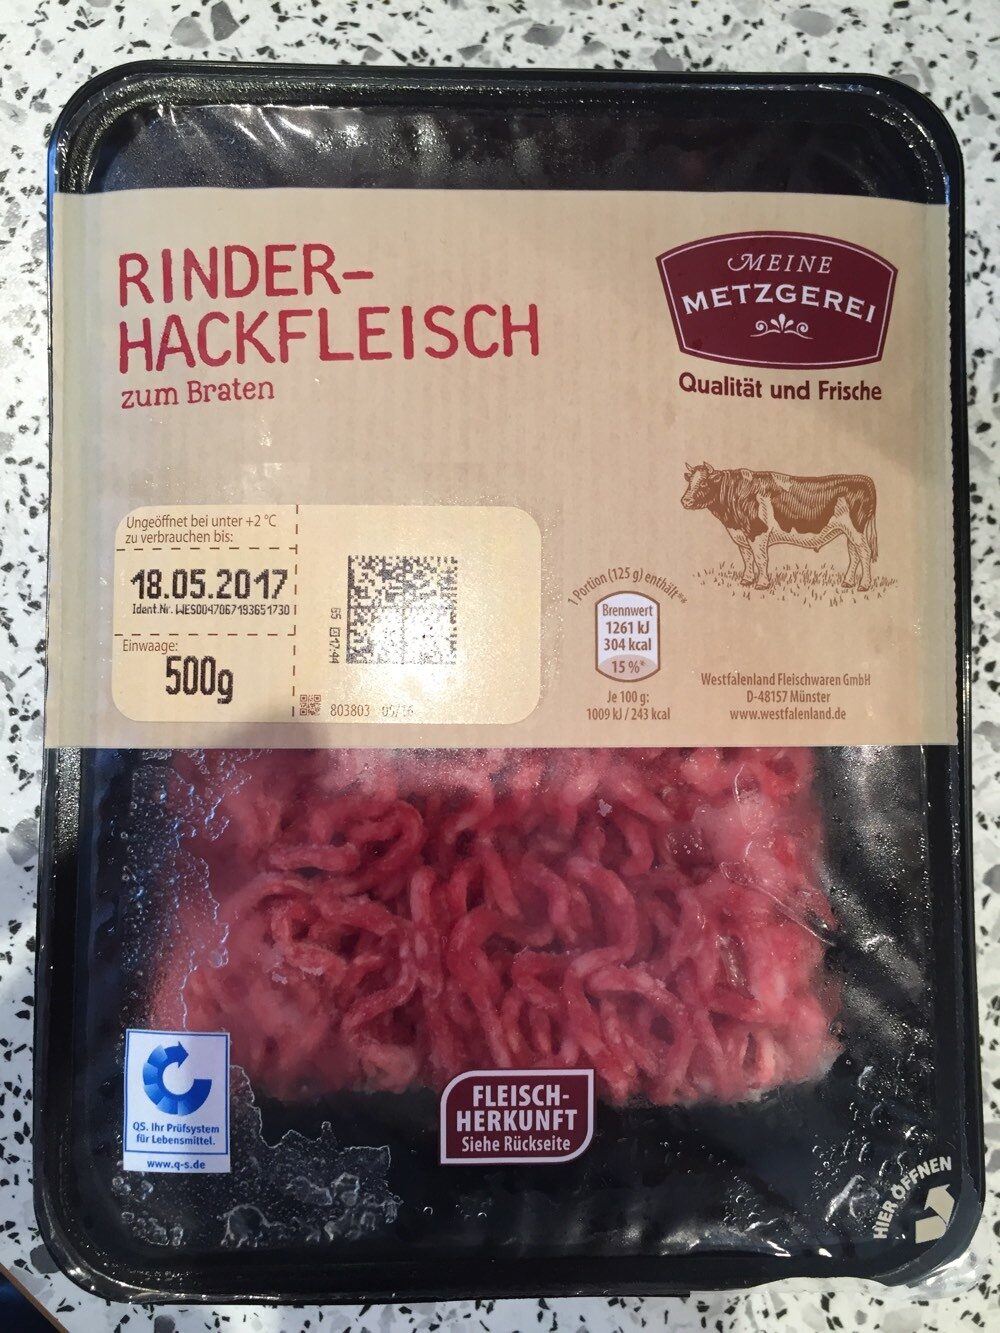 Rinder-Hackfleisch - Product - de